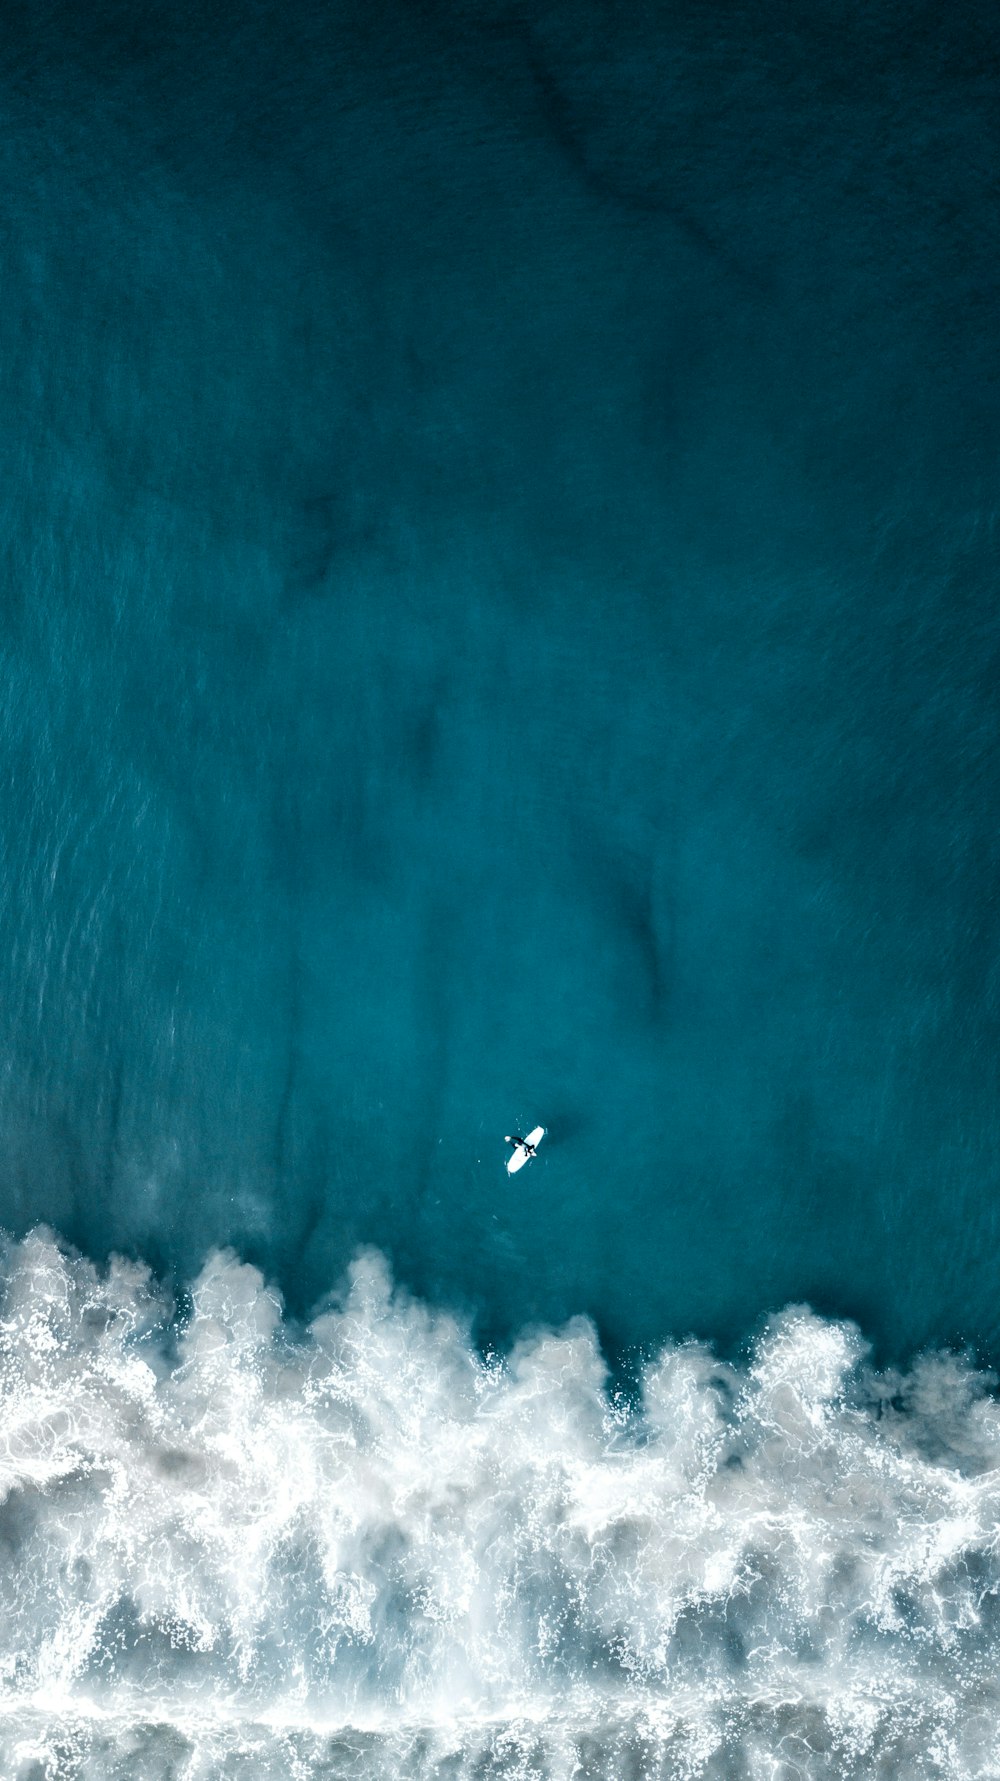 une vue aérienne d’un surfeur chevauchant une vague